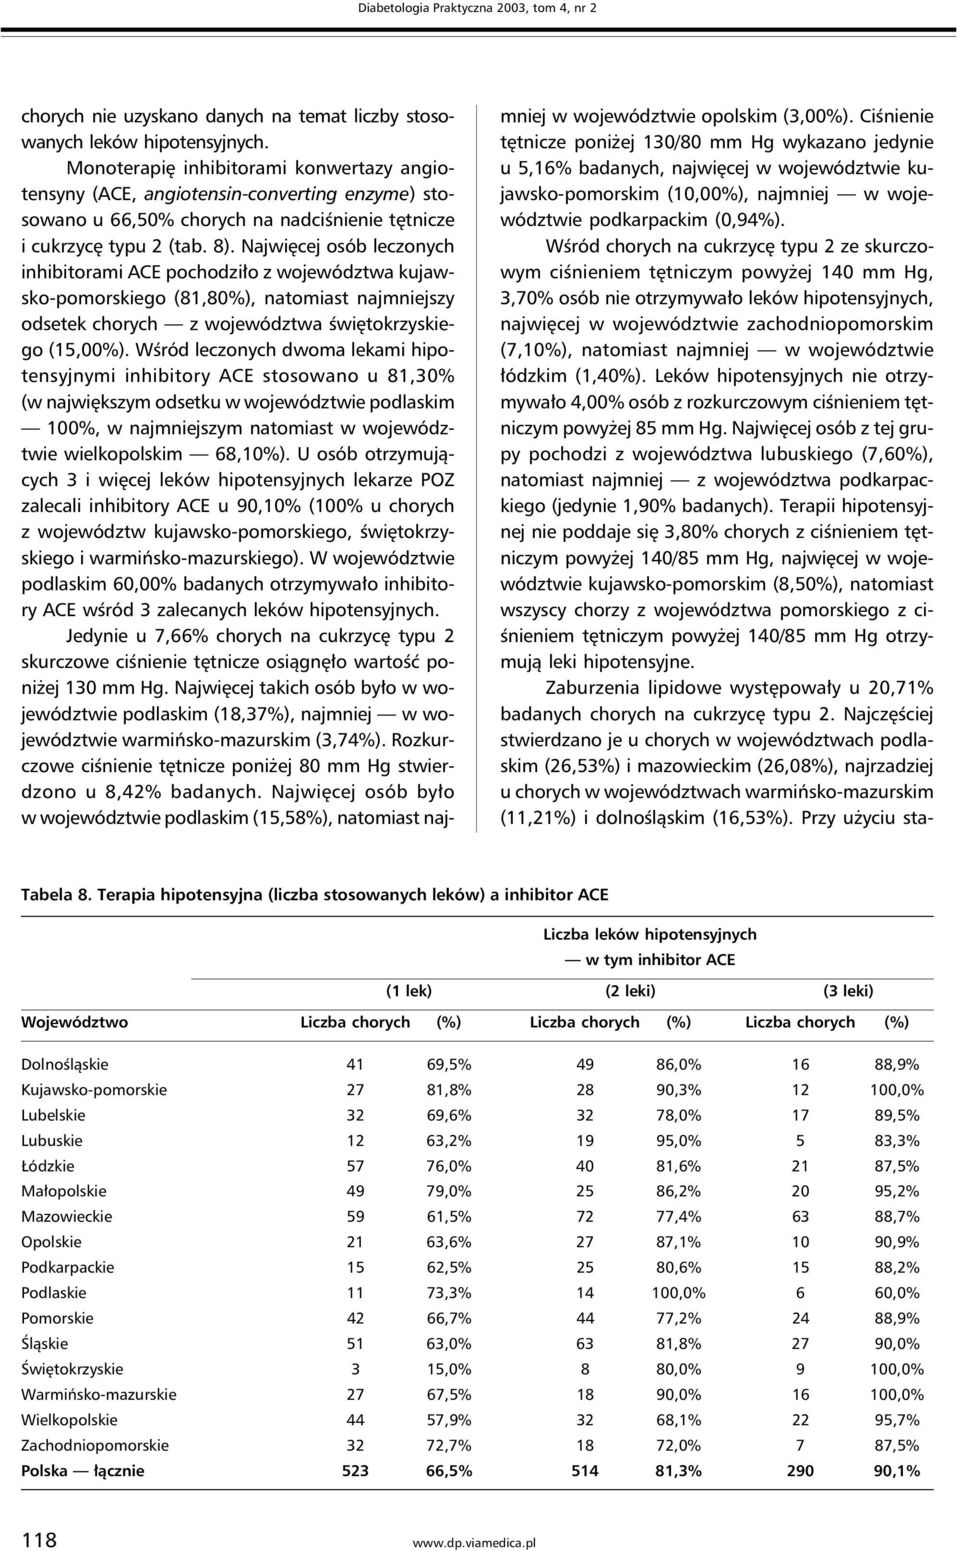 Najwięcej osób leczonych inhibitorami ACE pochodziło z województwa kujawsko-pomorskiego (81,80%), natomiast najmniejszy odsetek chorych z województwa świętokrzyskiego (15,00%).